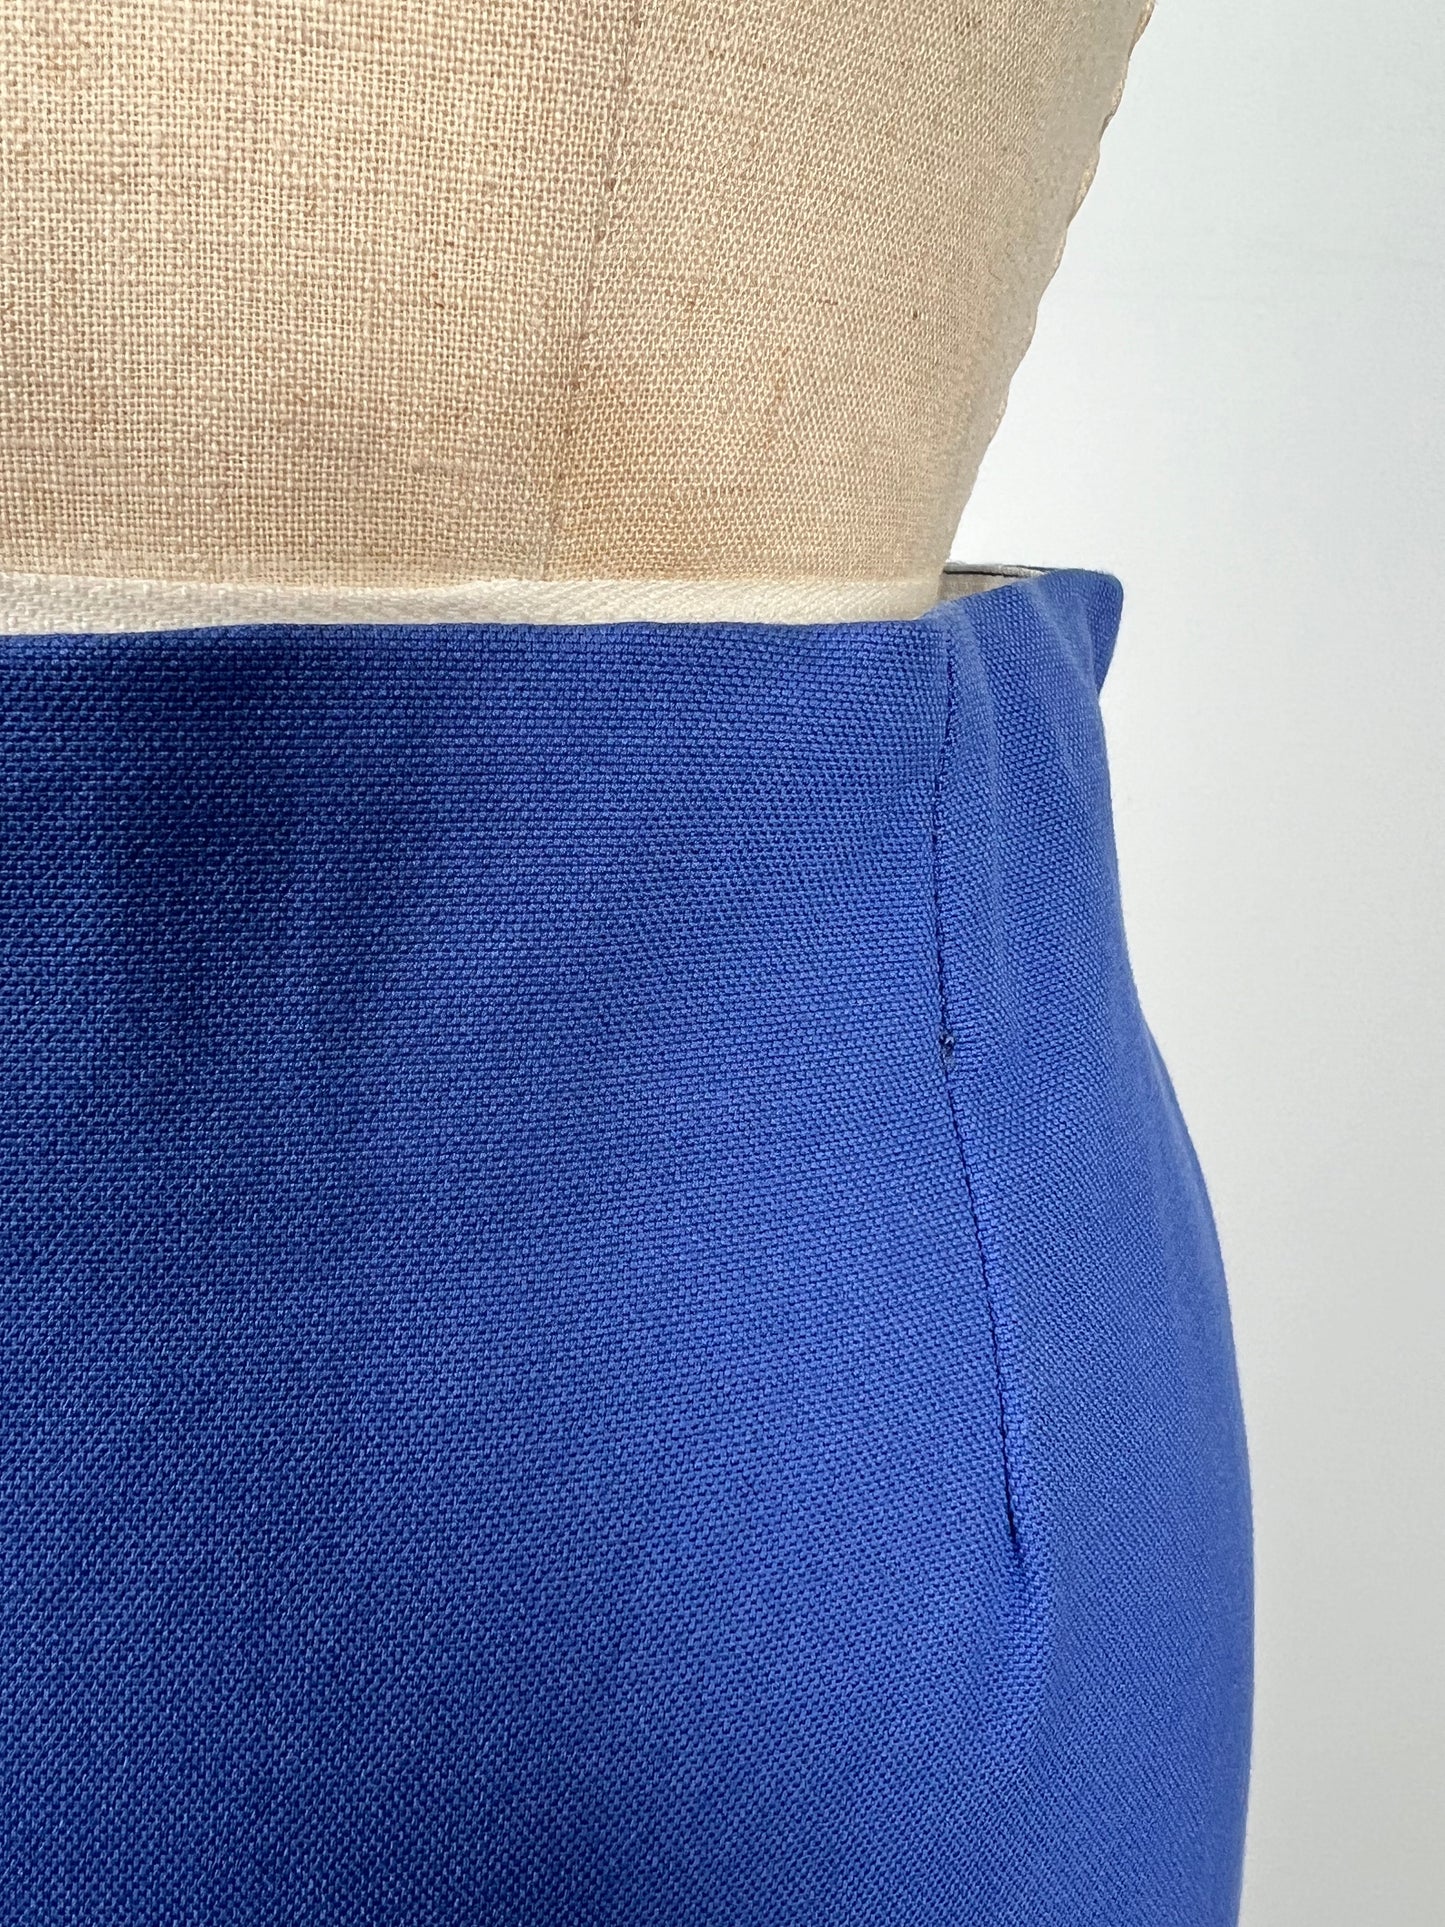 Jupe droite en coton surpiqué bleu lavande (4+6)